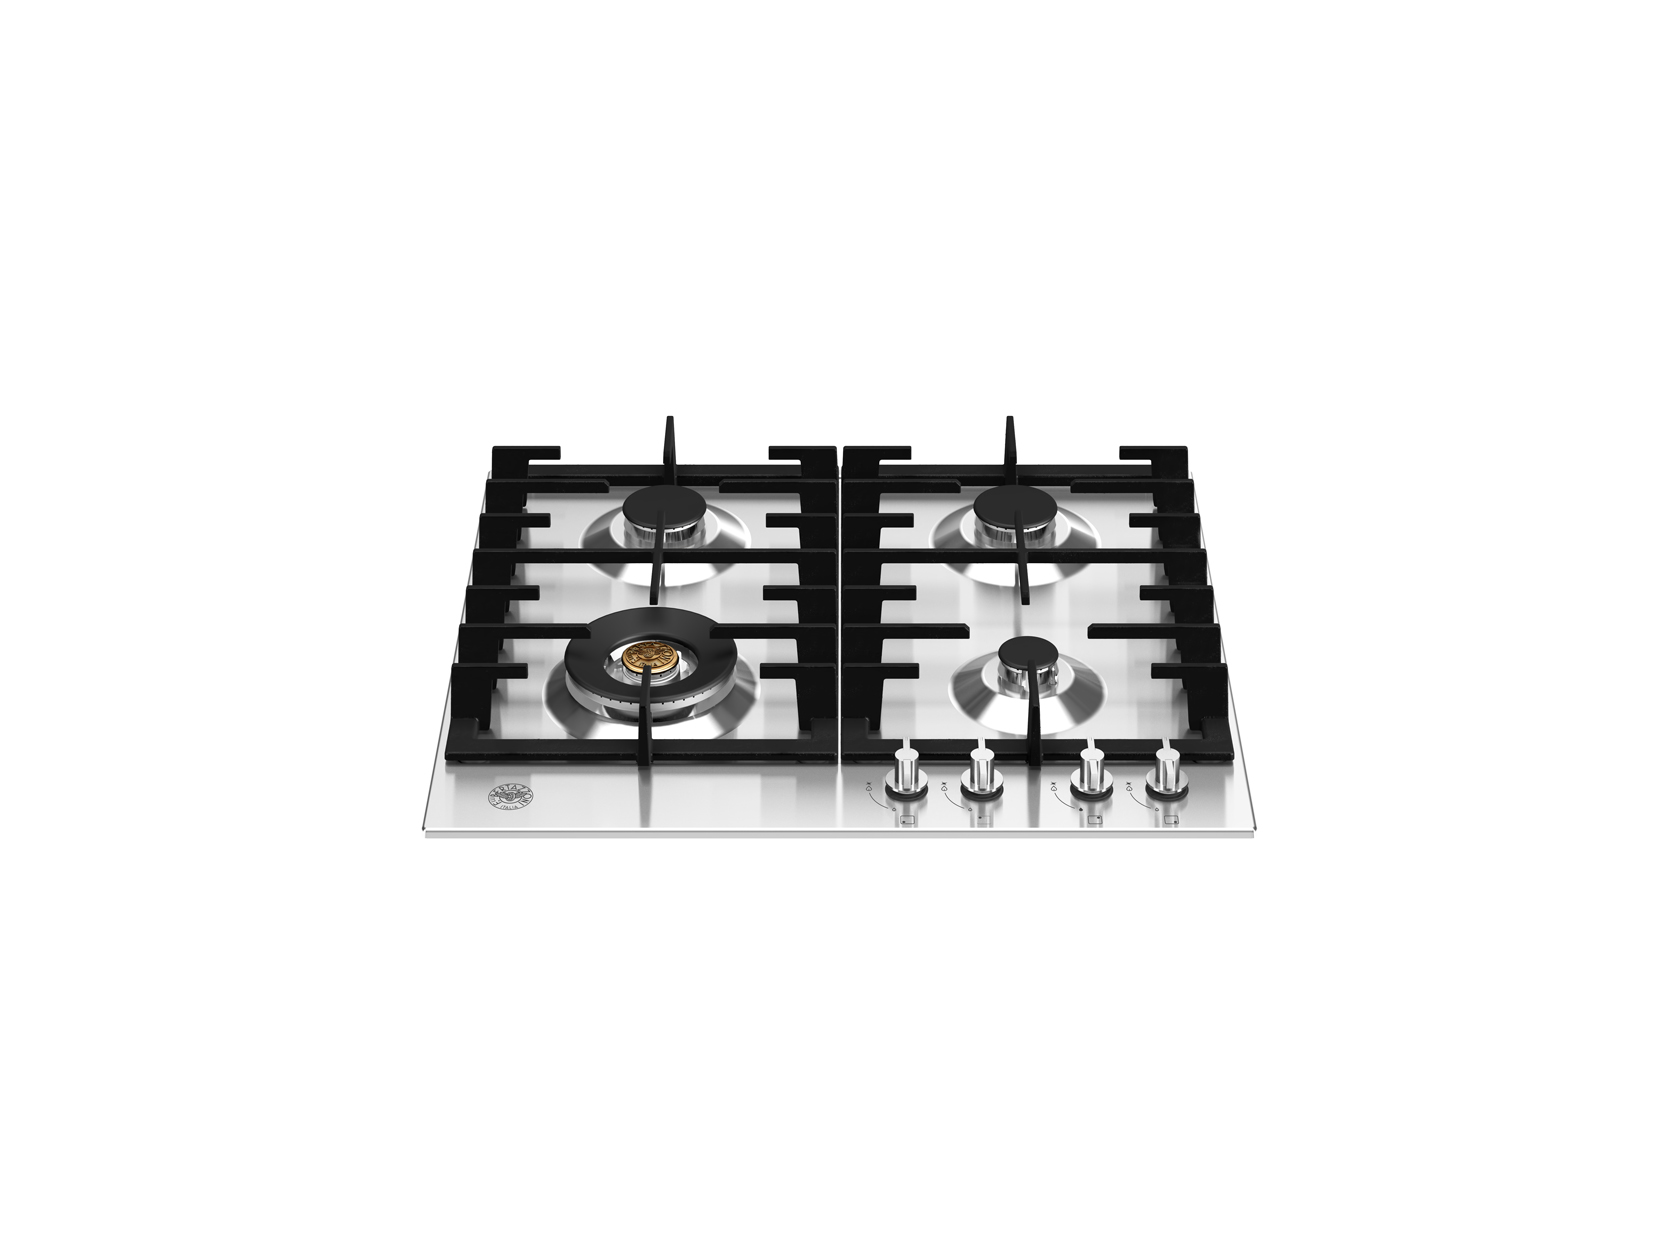 Plaque de cuisson induction encastrable noire 90cm Induction Pro 5 foyers  dont 1 flexi-zone + fonction InTouch NOVY Mon Espace Cuisson